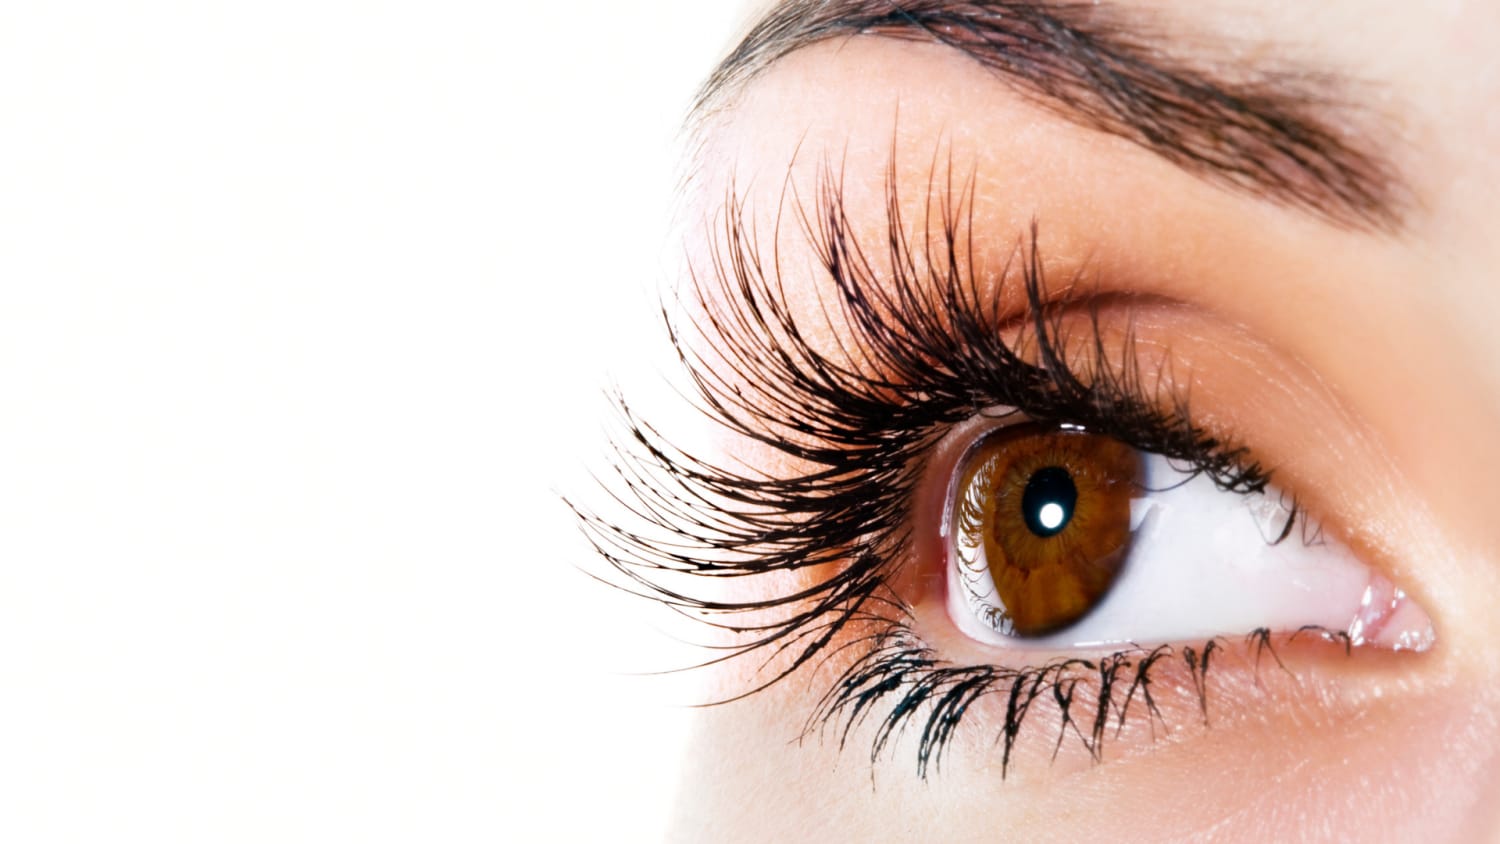 Eyelash lamination lift – is it worth doing?